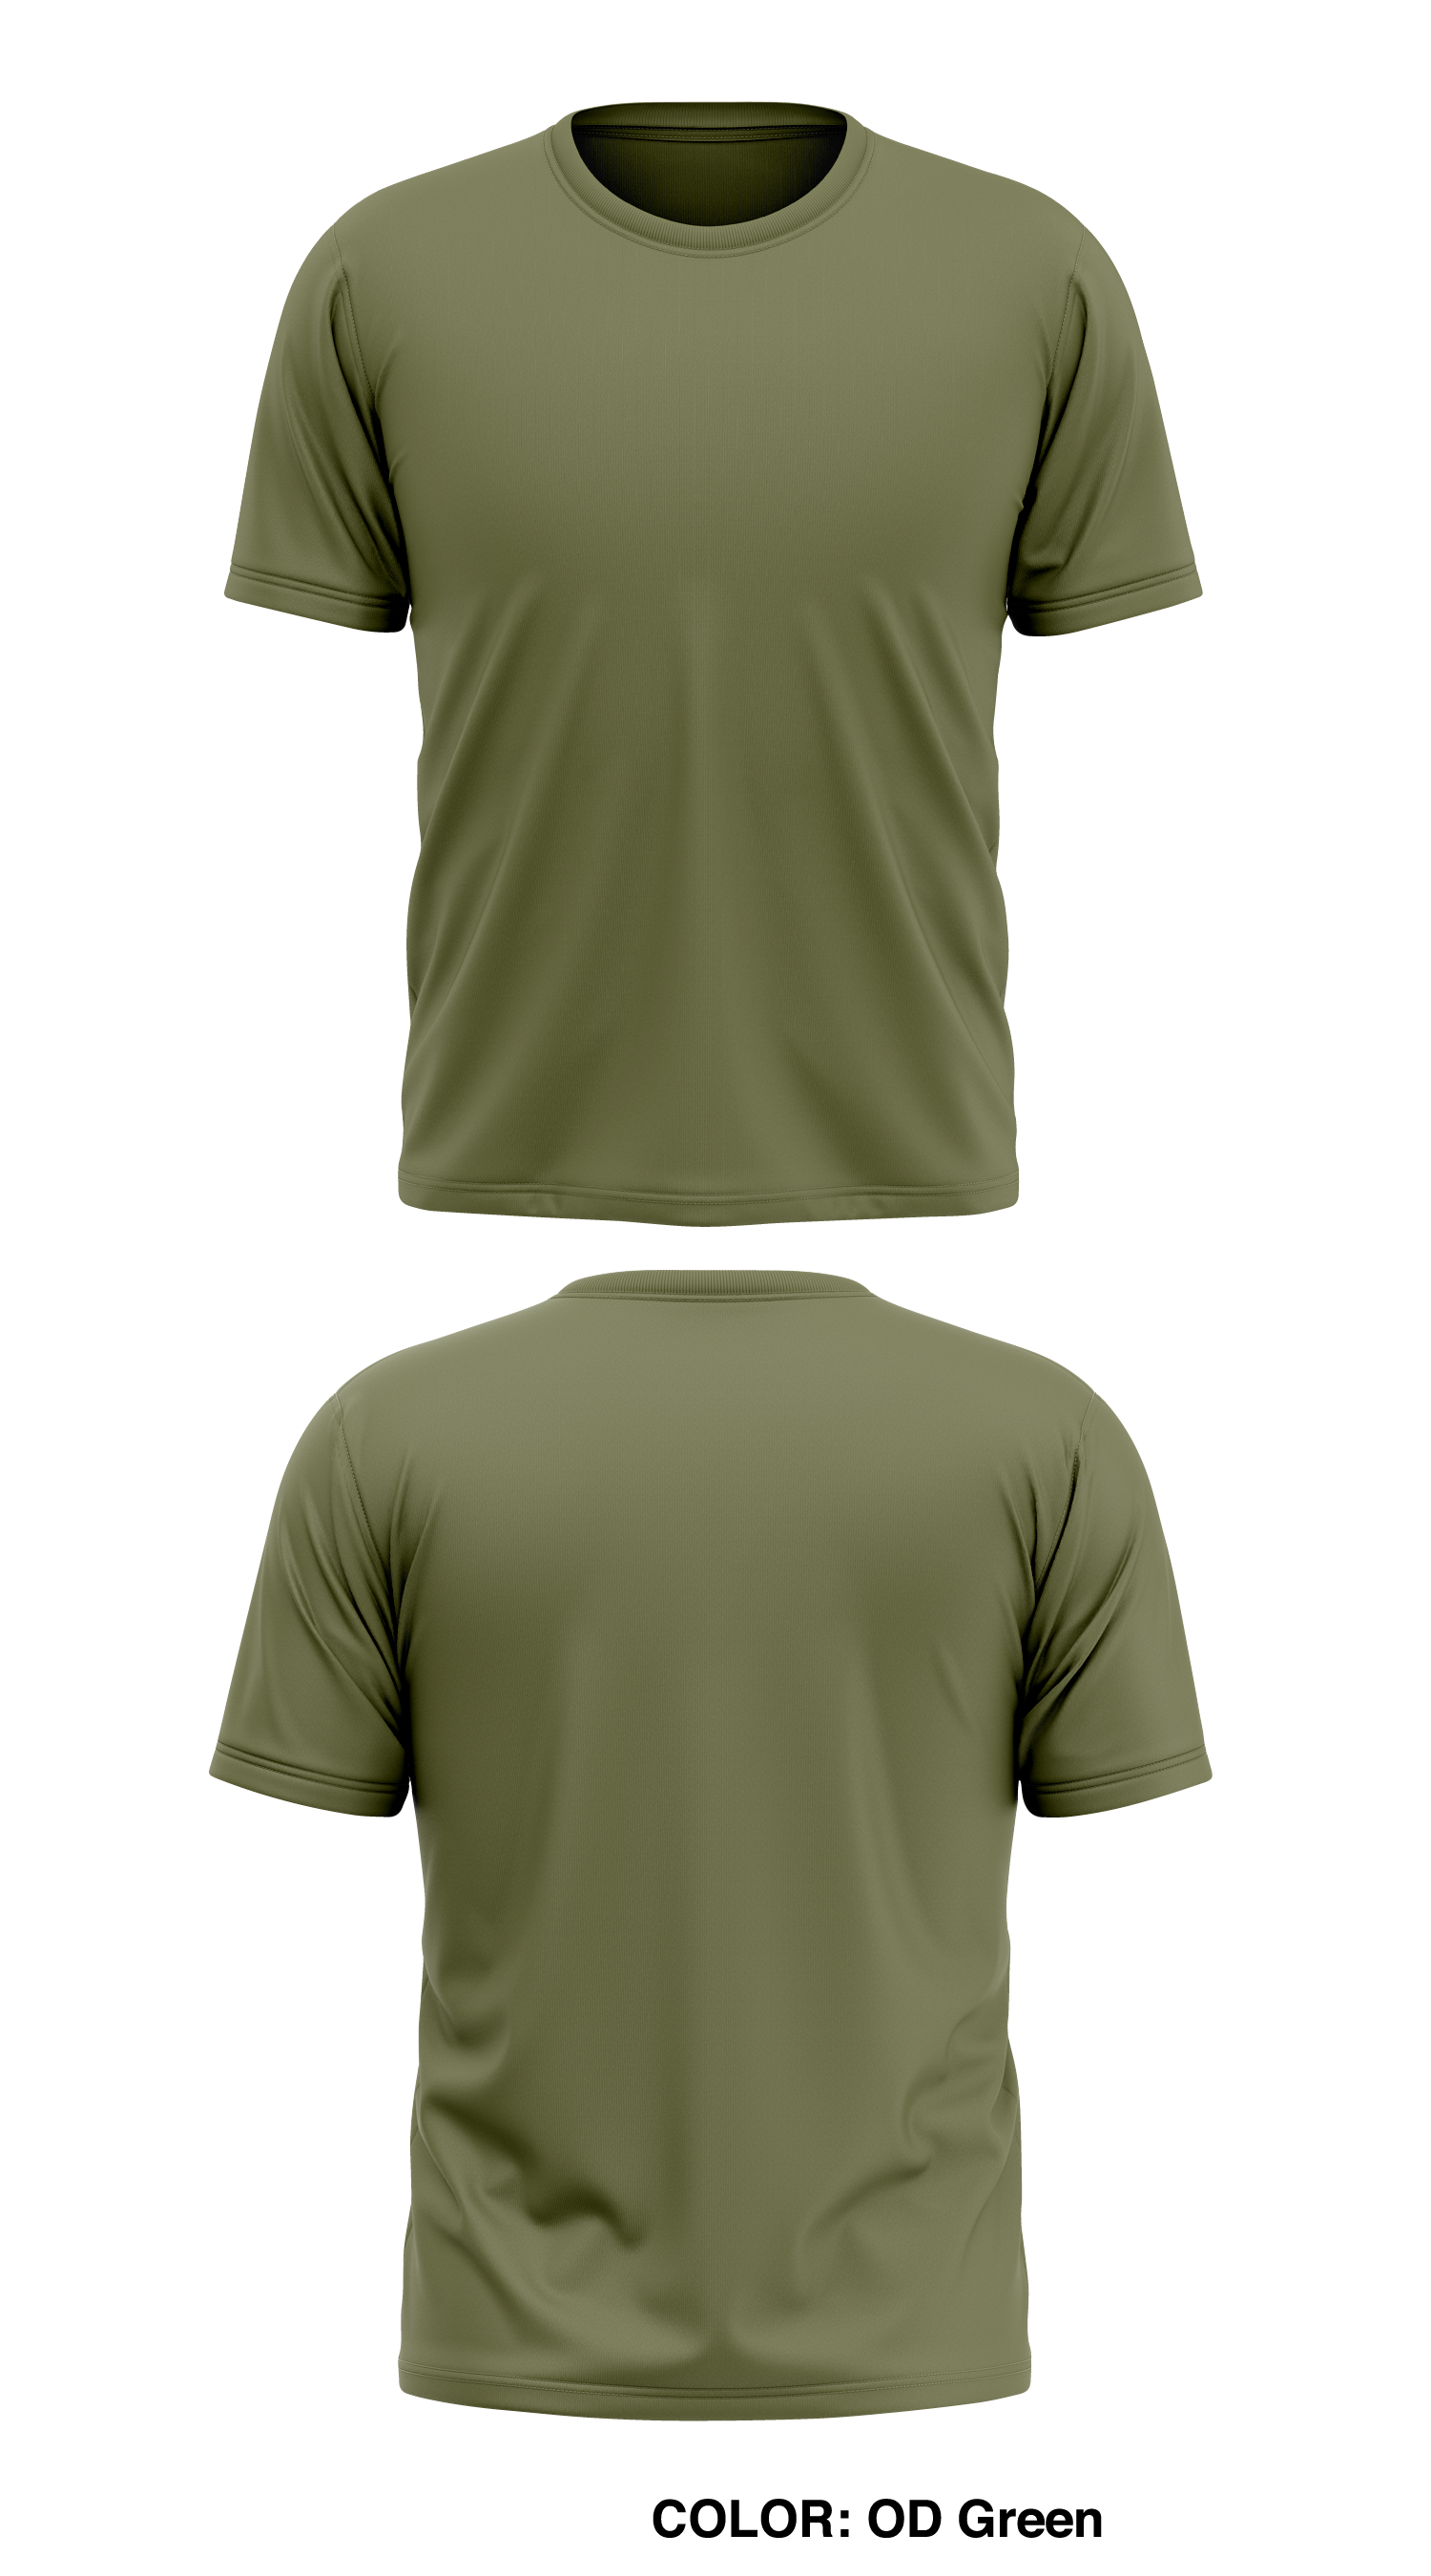 Gildan Mens Heavy Cotton T-Shirt, 2XL, Forest Green 